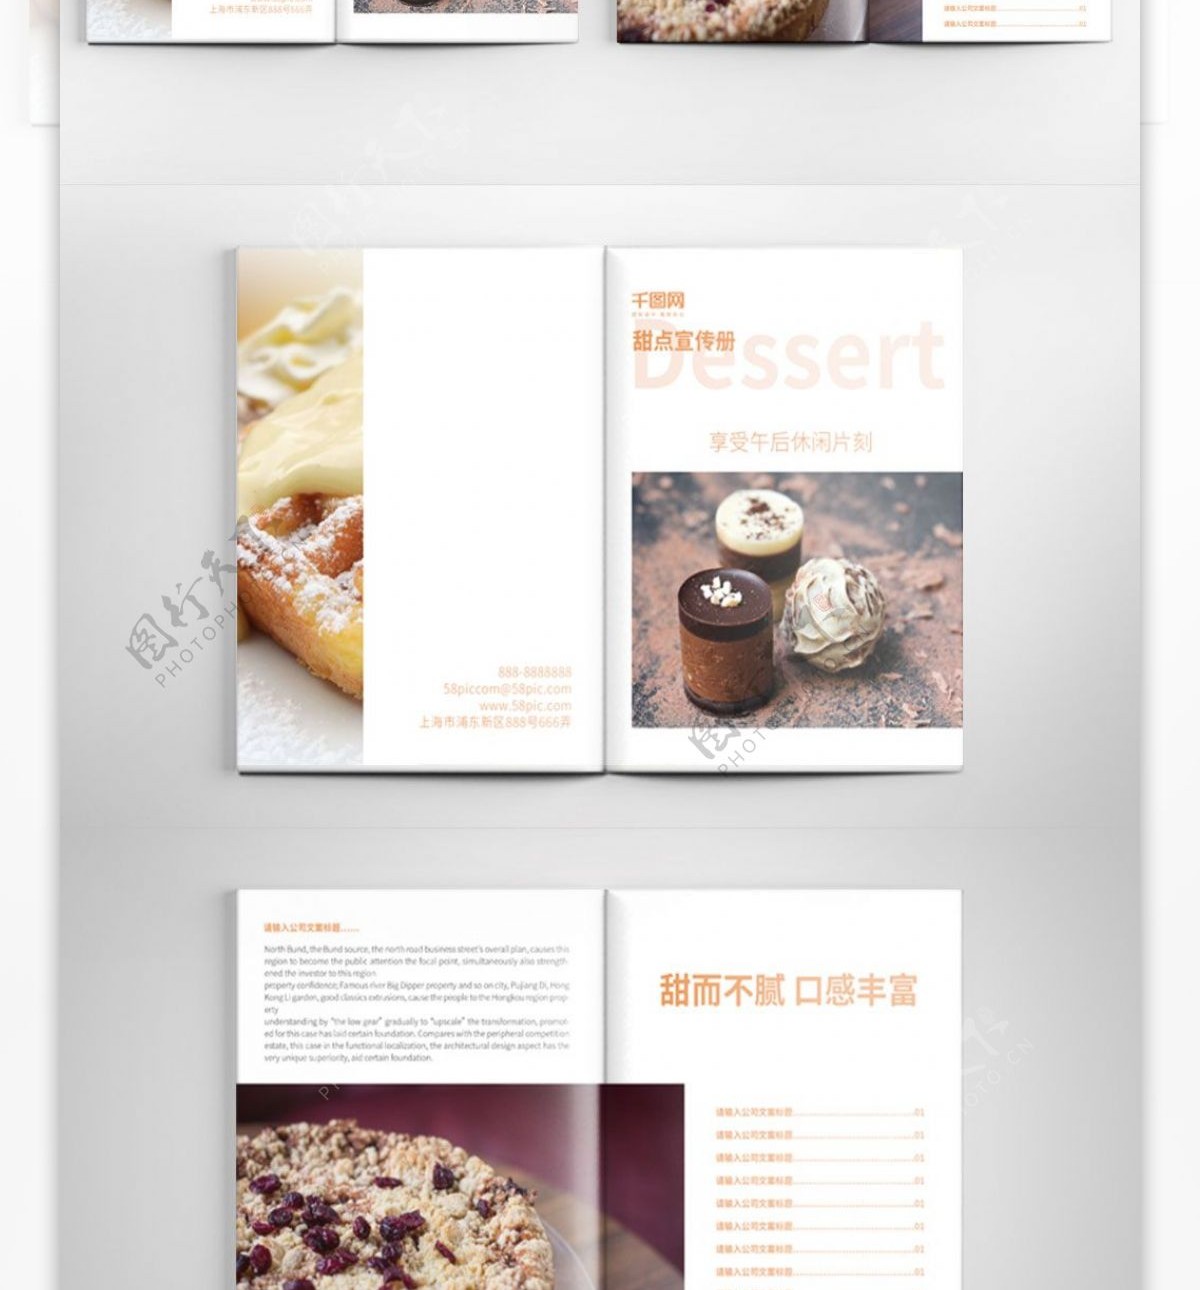 餐饮简约甜点店画册设计PSD模板